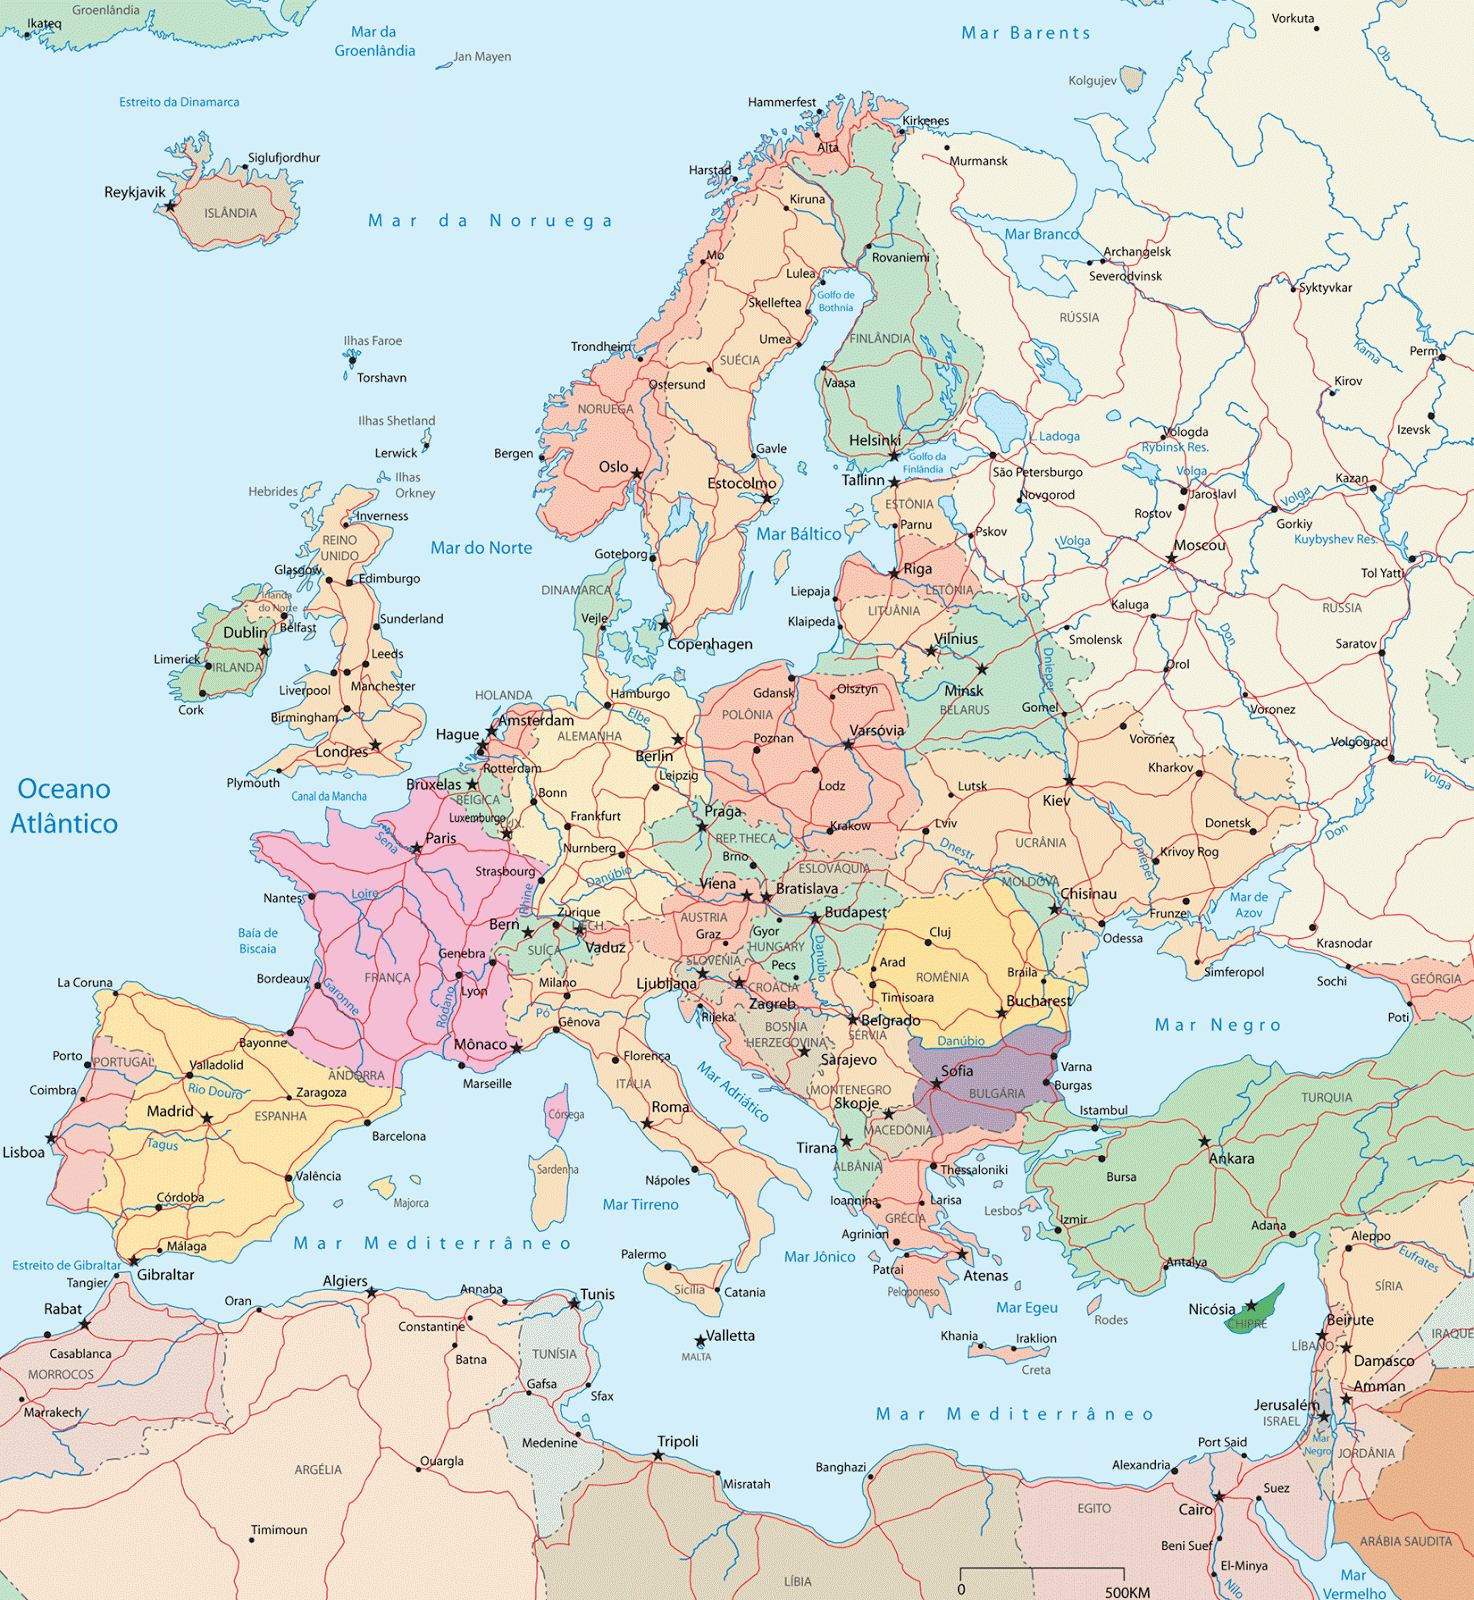 Mapa Atual Da Europa PortuguÊs PolÍtico ~ Dicas Grátis 2020